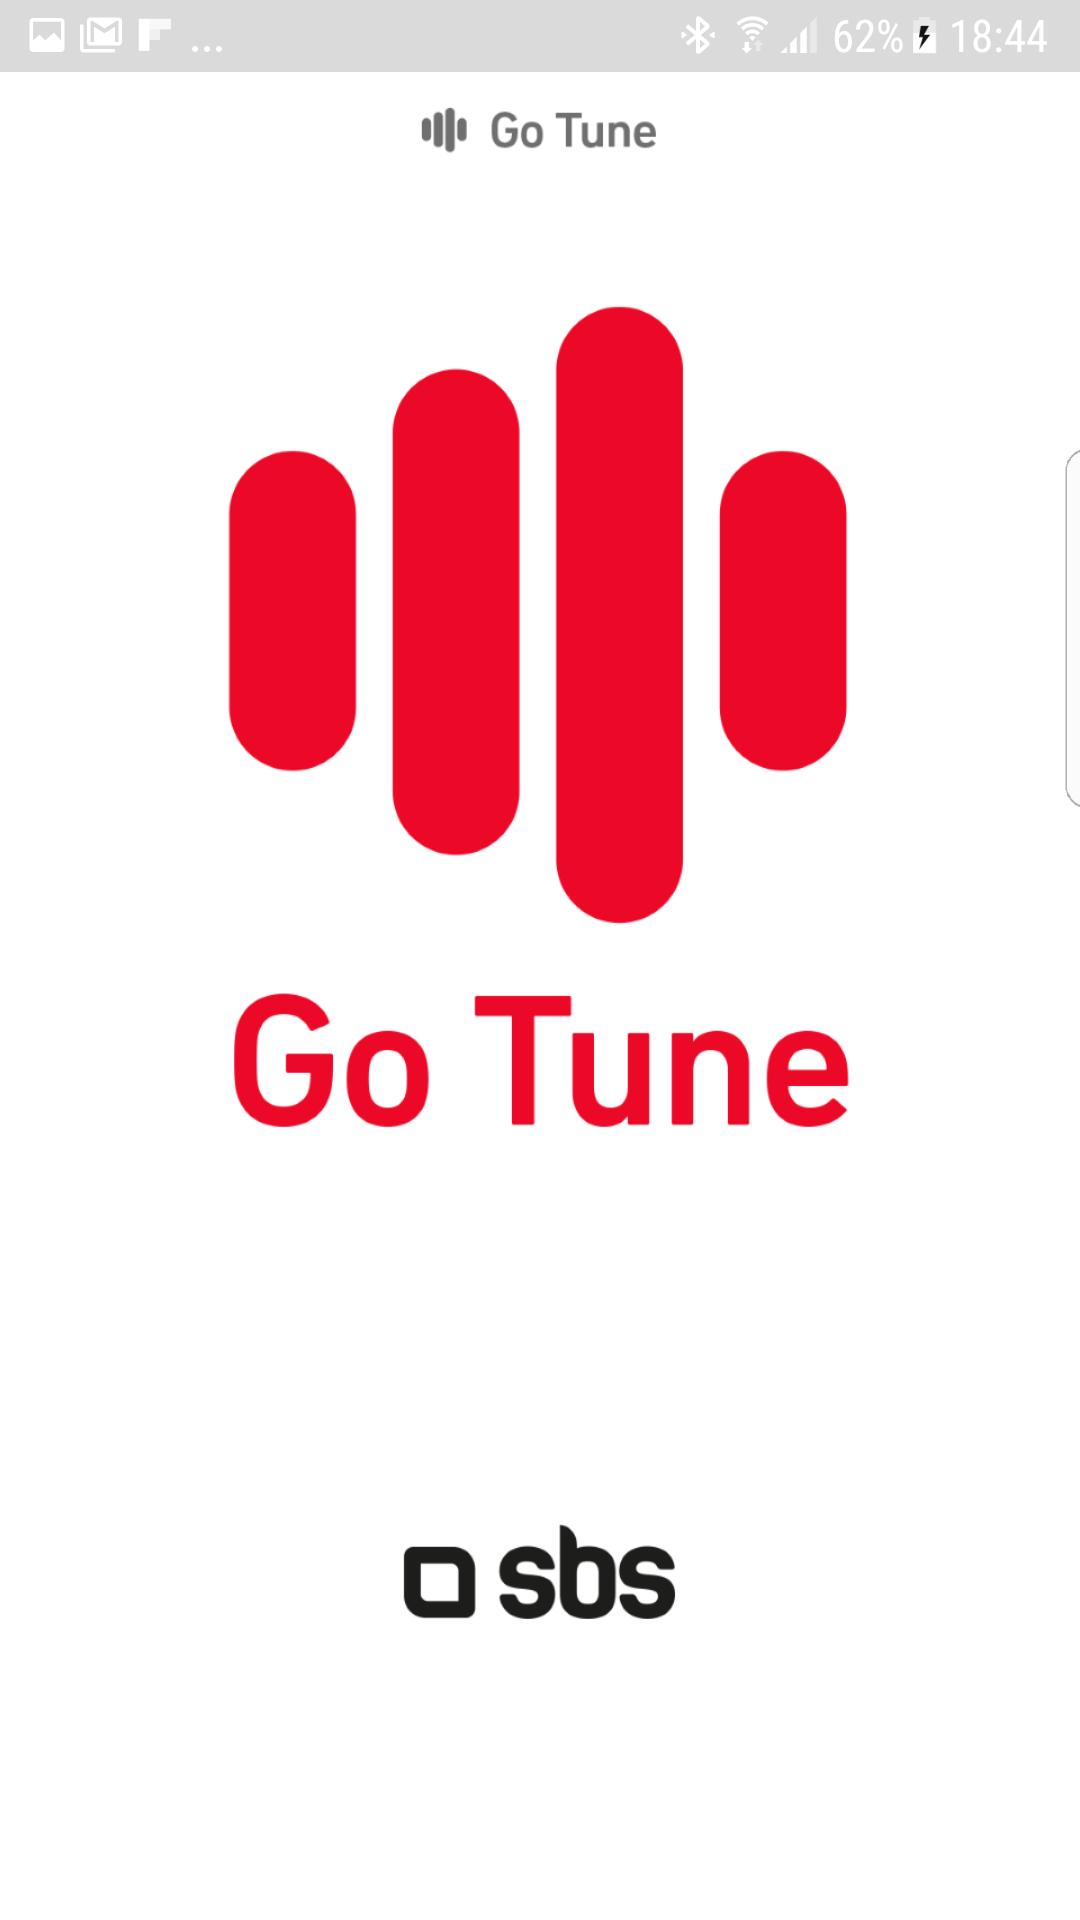 Tune. Tuni. SBS. Tune to go. Tune download